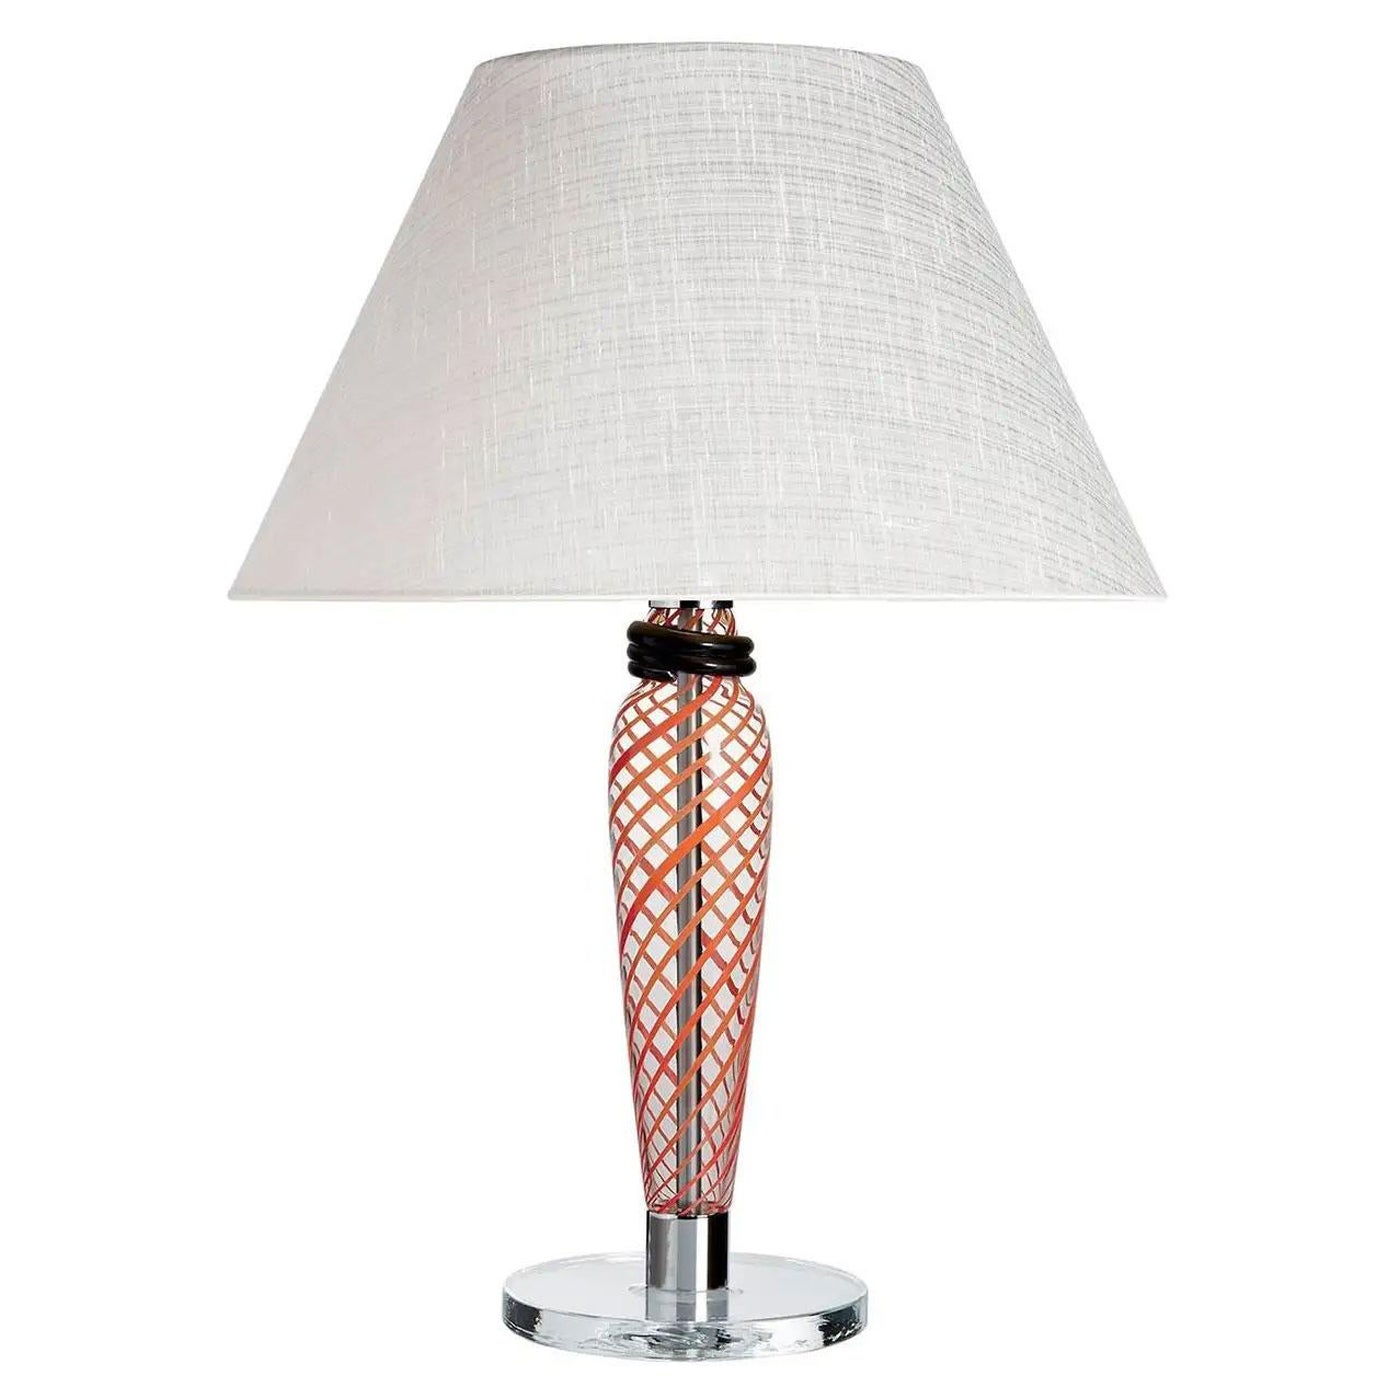 Bricola Carlo Moretti Contemporary Red and Coral Murano Glass Table Lamp For Sale